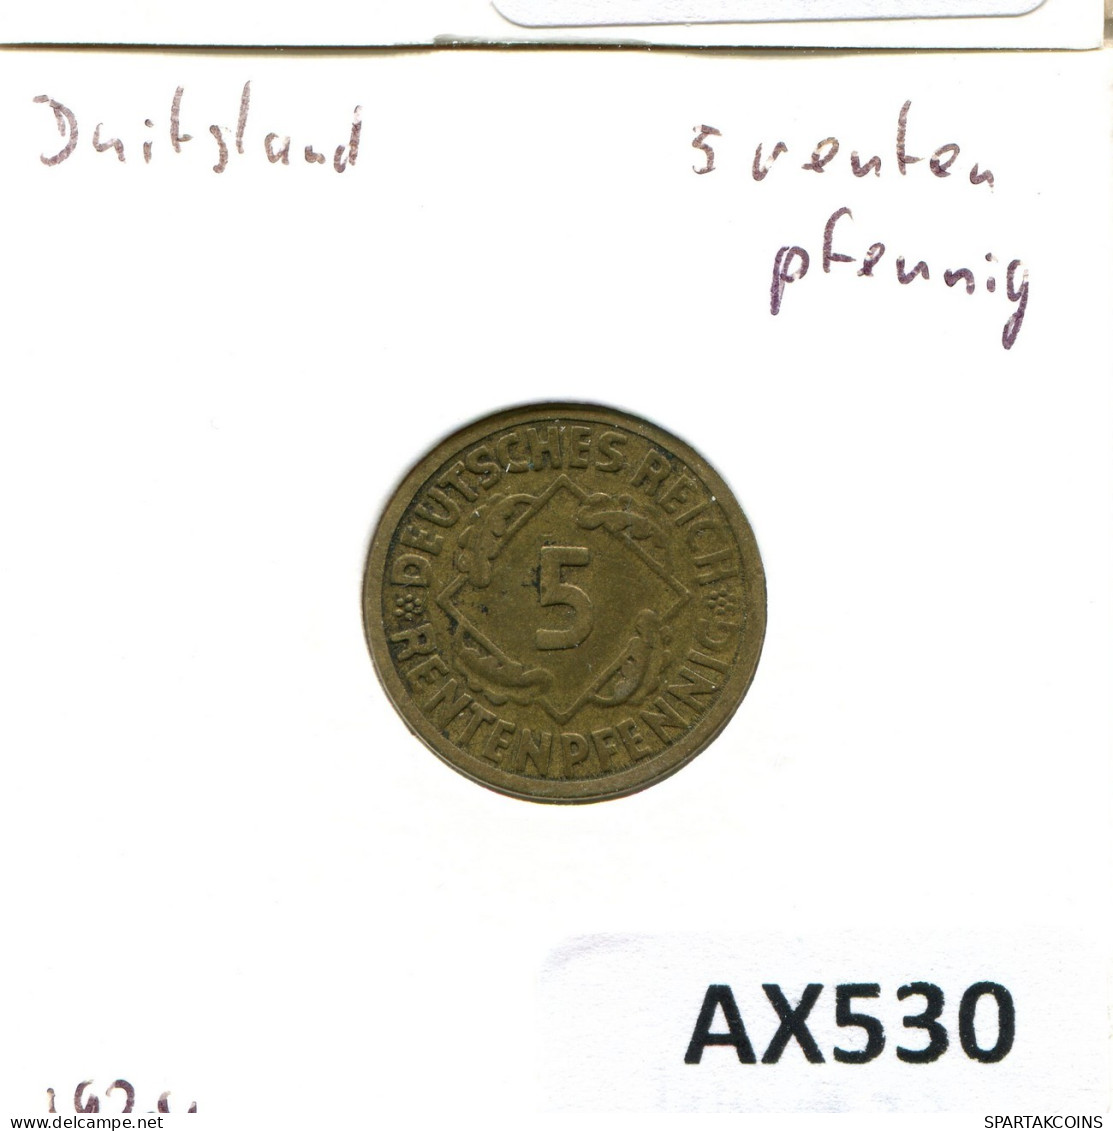 5 RENTENPFENNIG 1924 A ALEMANIA Moneda GERMANY #AX530.E.A - 5 Rentenpfennig & 5 Reichspfennig